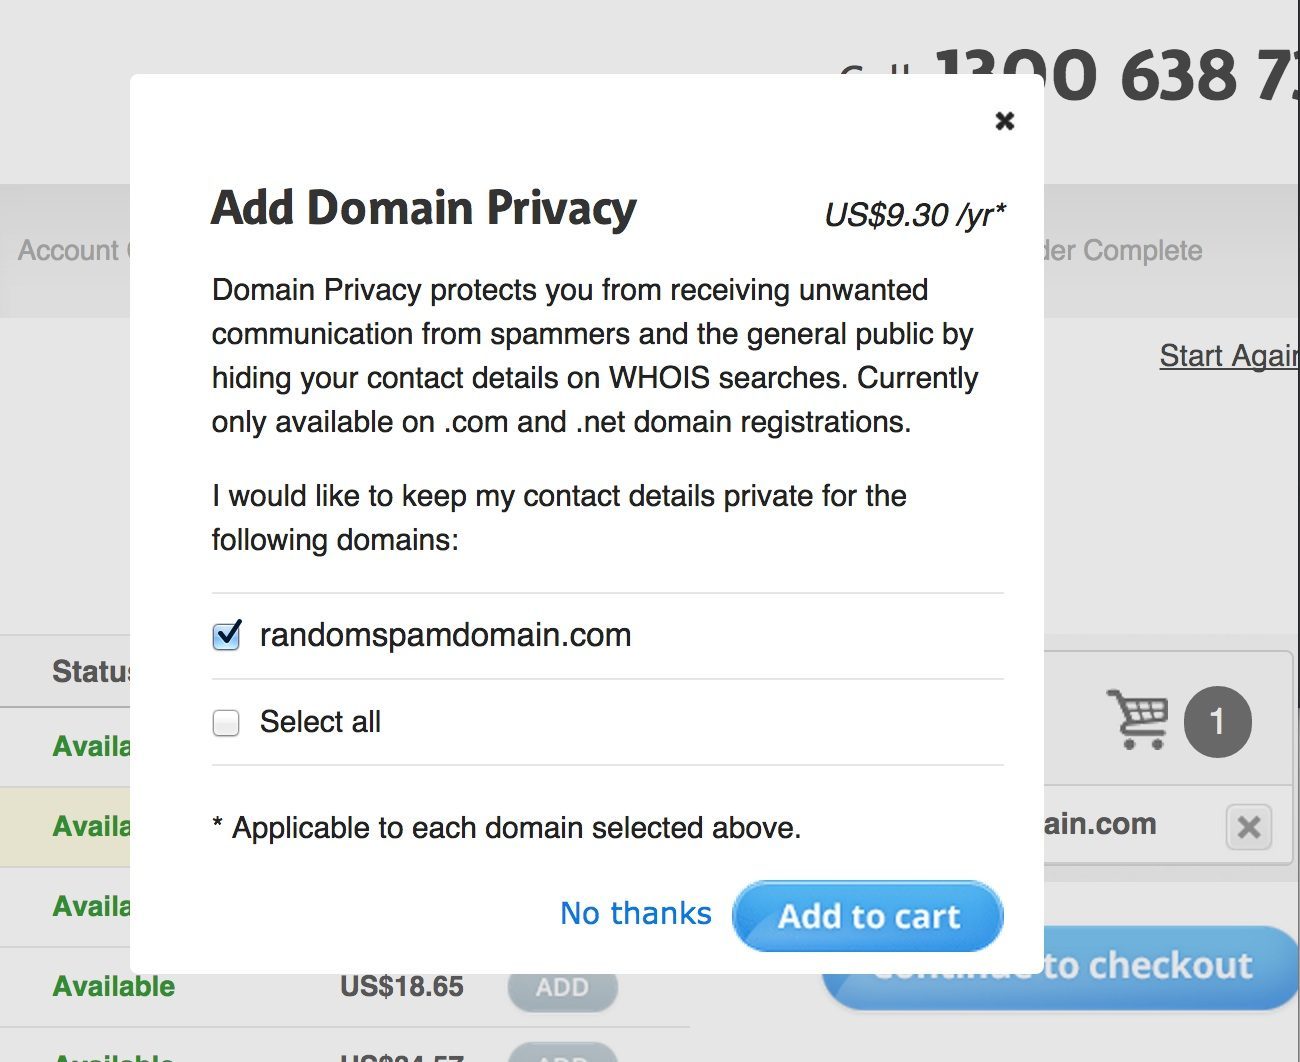 Add Domain Privacy?